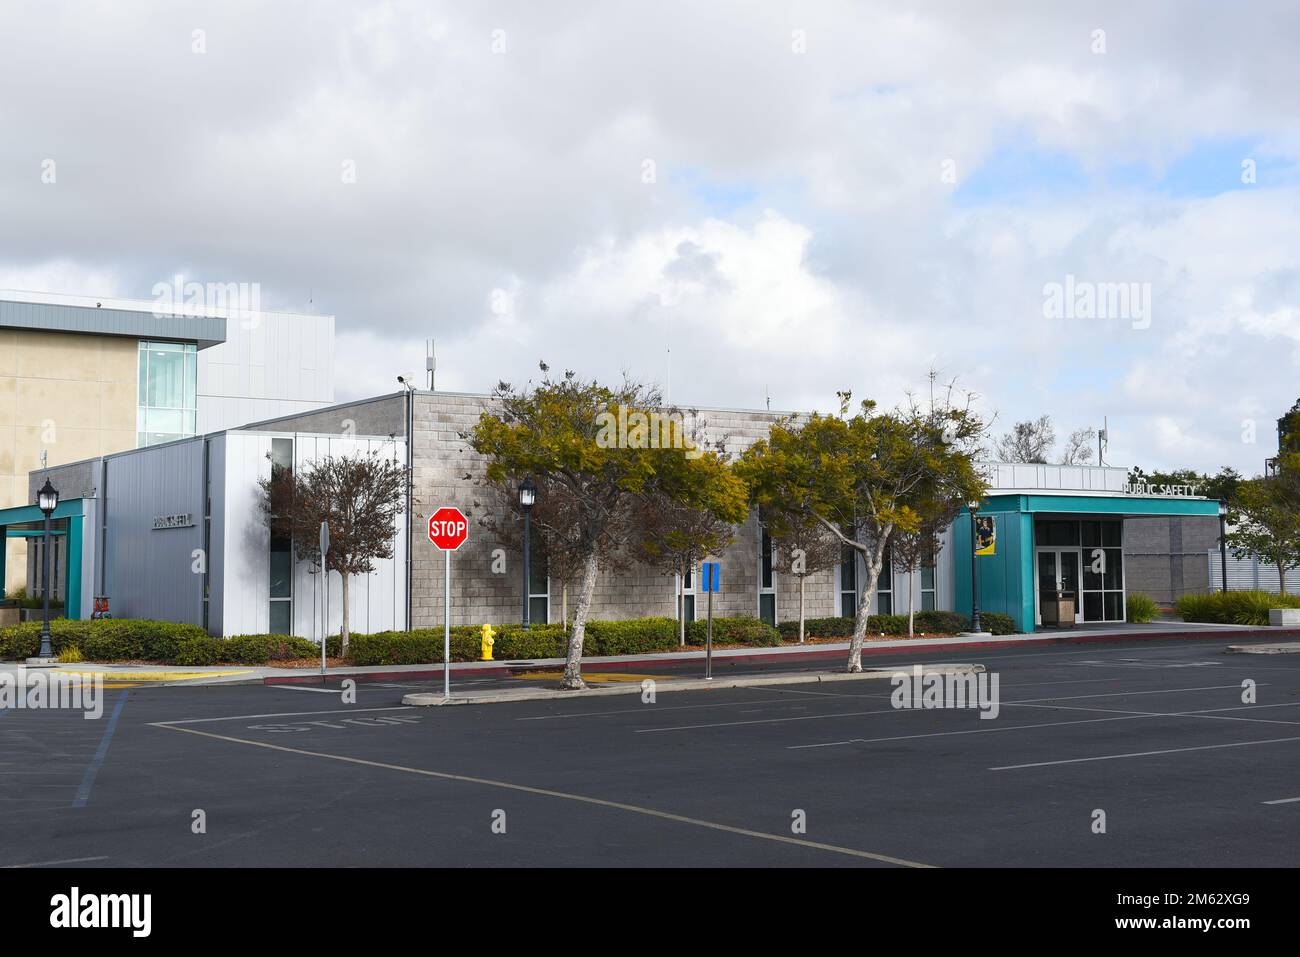 HUNTINGTON BEACH, CALIFORNIA - 01 GEN 2023: Edificio per la pubblica sicurezza nel campus del Golden West College. Foto Stock